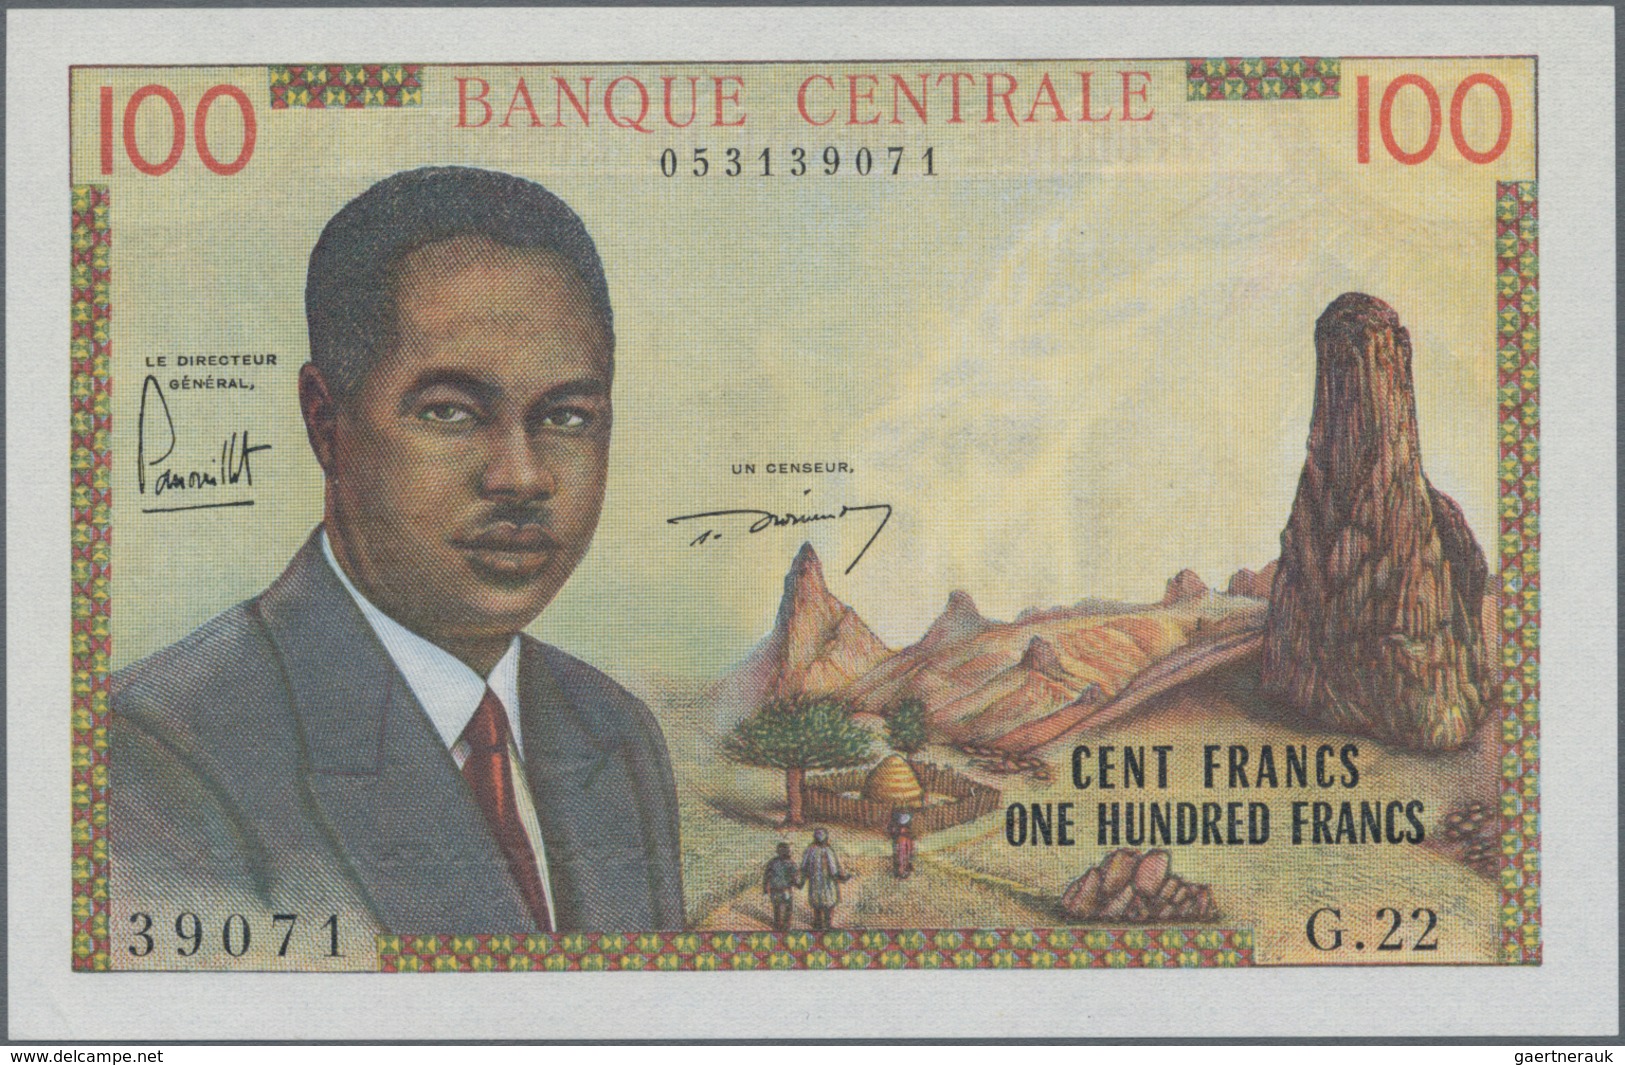 Cameroon / Kamerun: Banque Centrale - République Fédérale Du Cameroun 100 Francs ND(1962), P.10, Tin - Kamerun